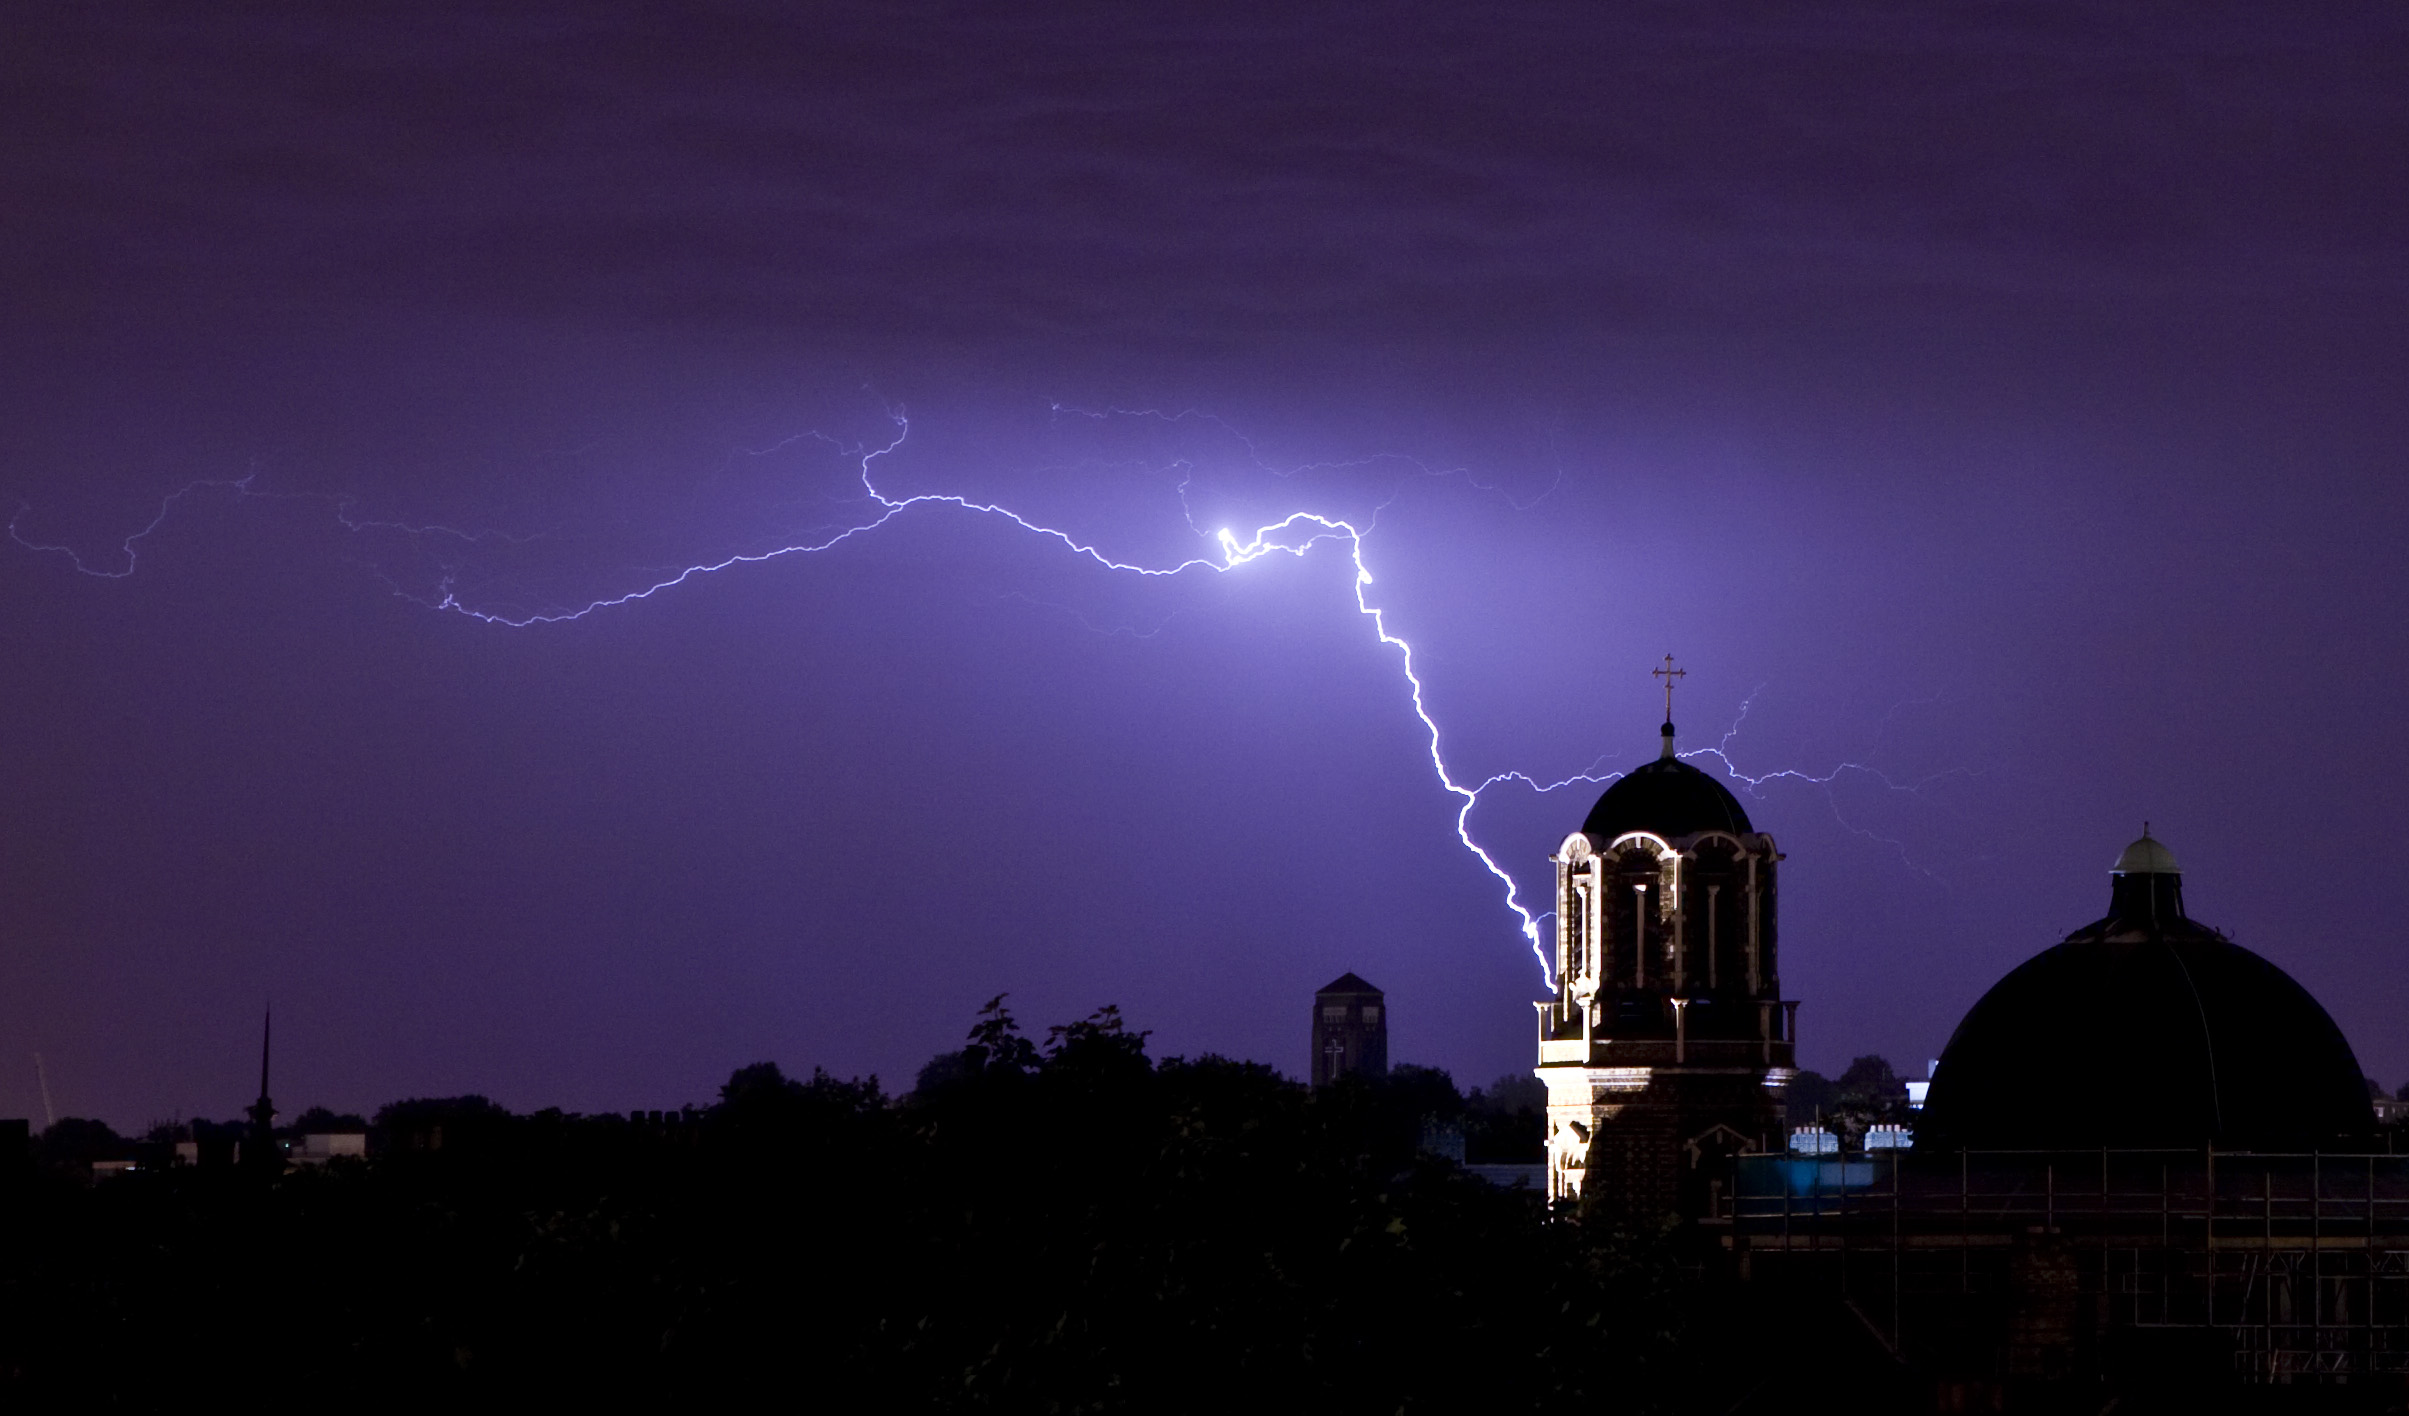 Lightning Strikes Over London Skyline